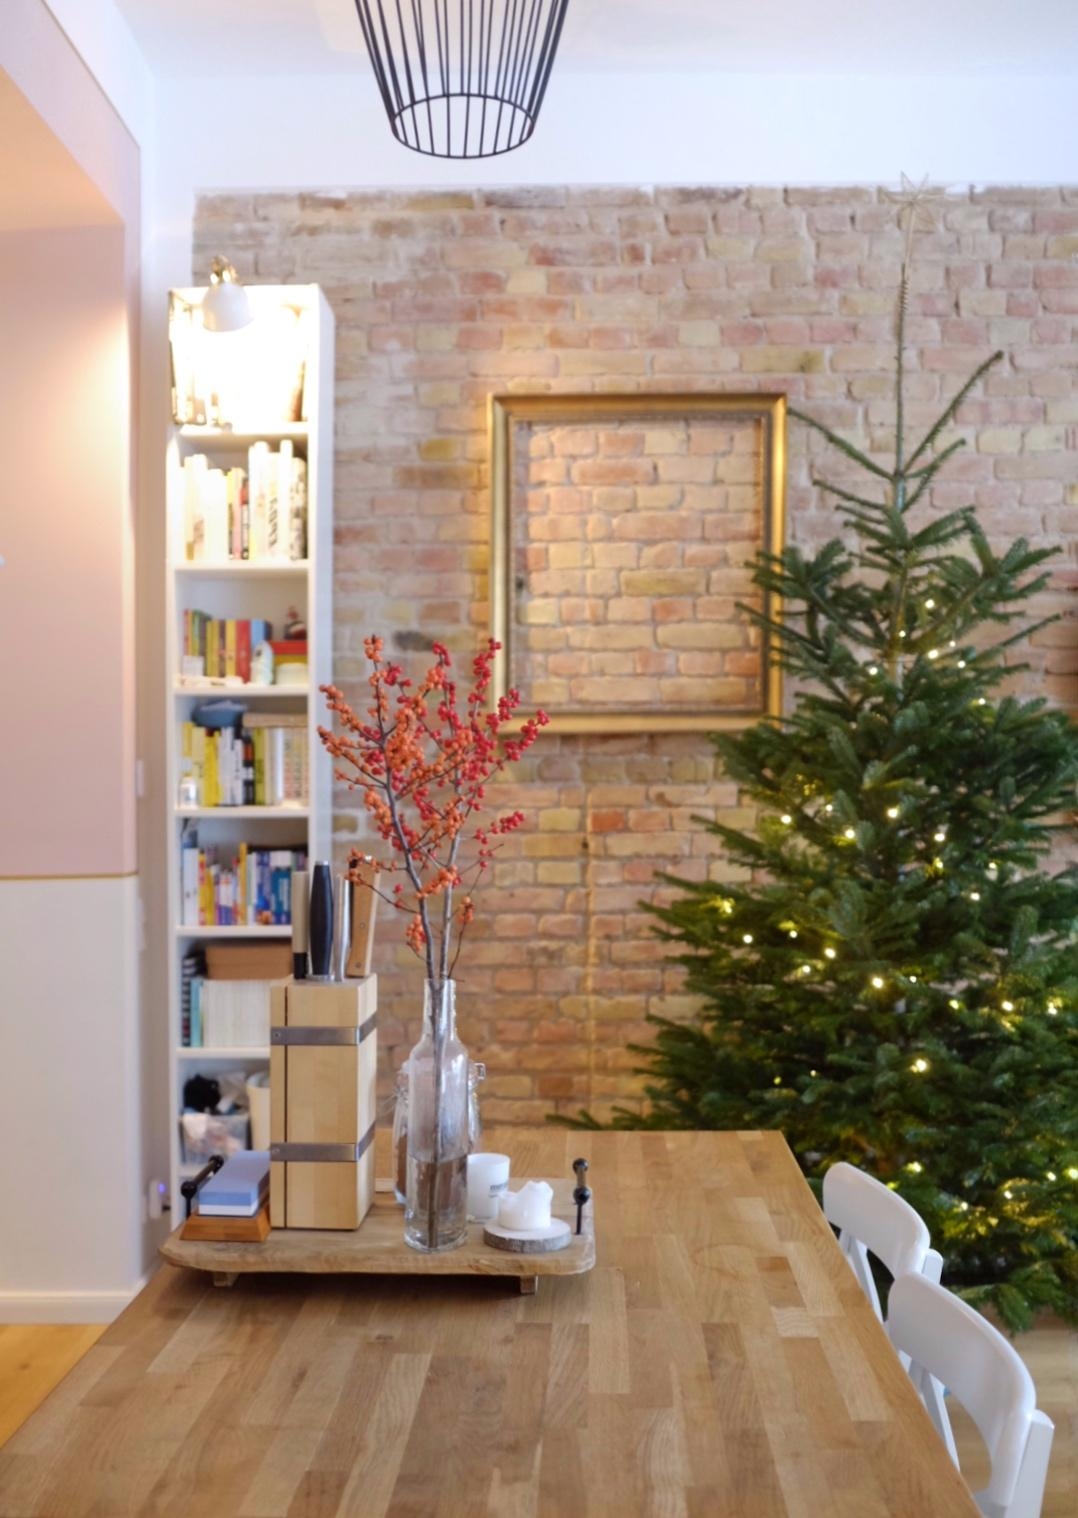 Unser Weihnachtsbaum. 🥰 Allerdings noch nicht fertig geschmückt. #wohnzimmer #backsteinwand #altbau